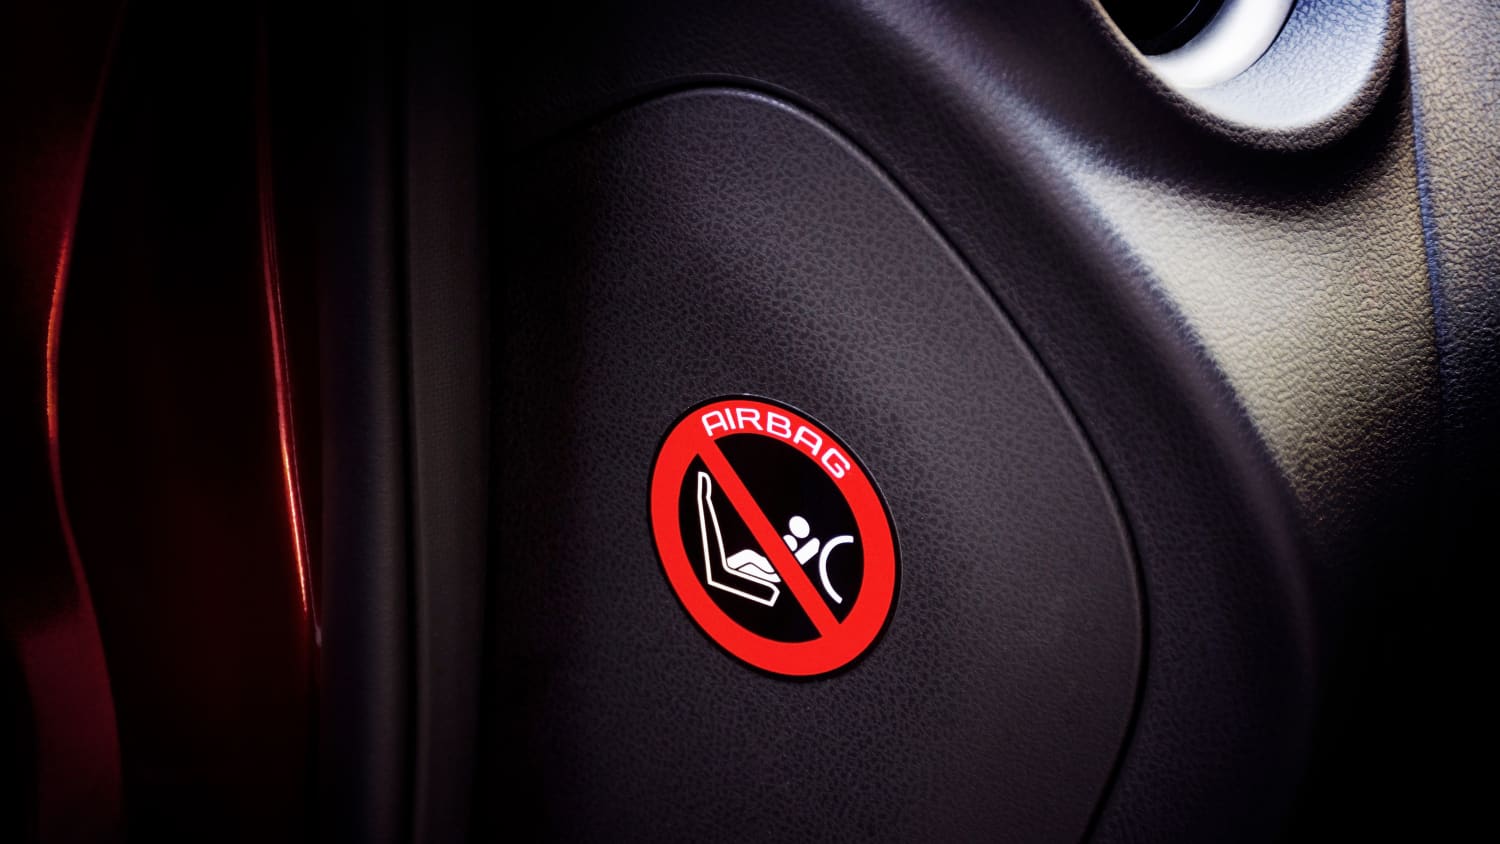 Kinder auf Beifahrersitz: Sind Kindersitze vorne erlaubt?